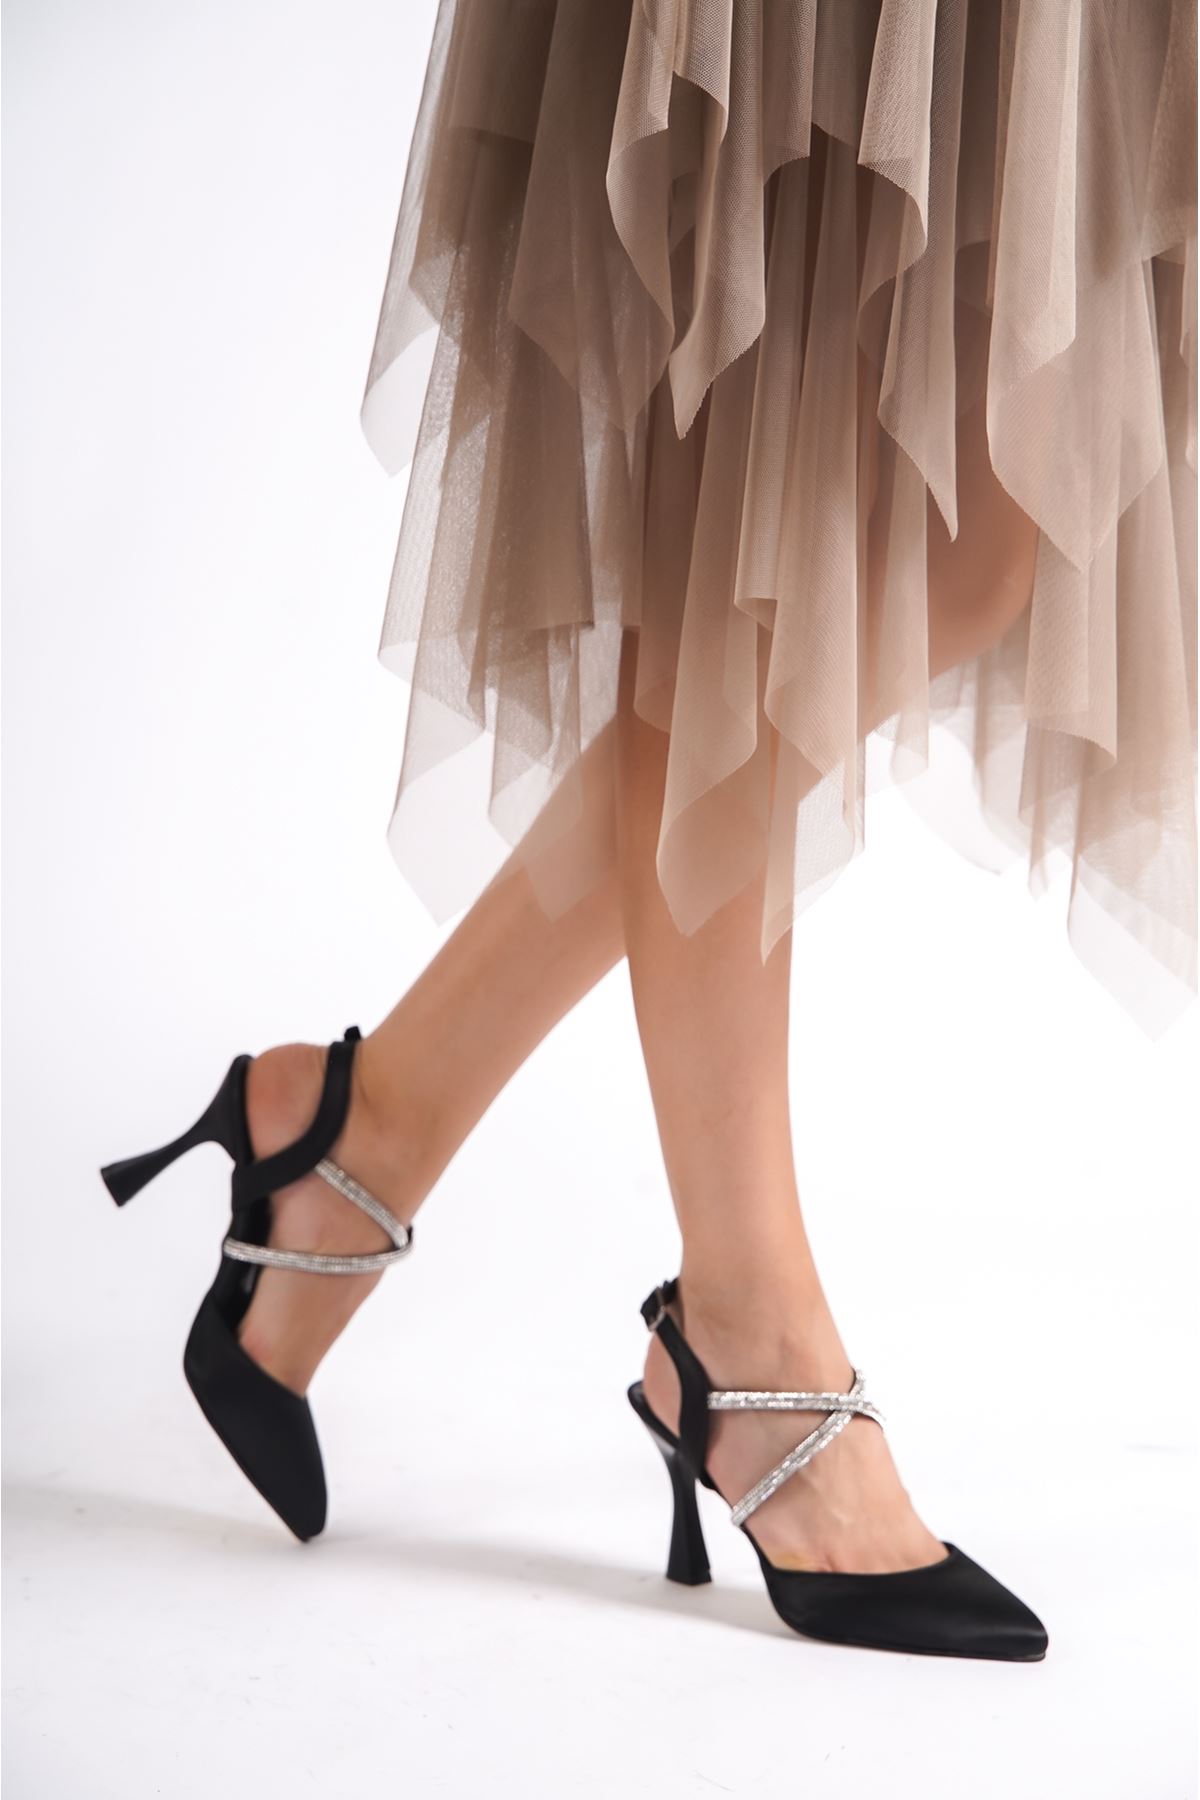 Jayla Siyah Taşlı Saten Topuklu Kadın Ayakkabı